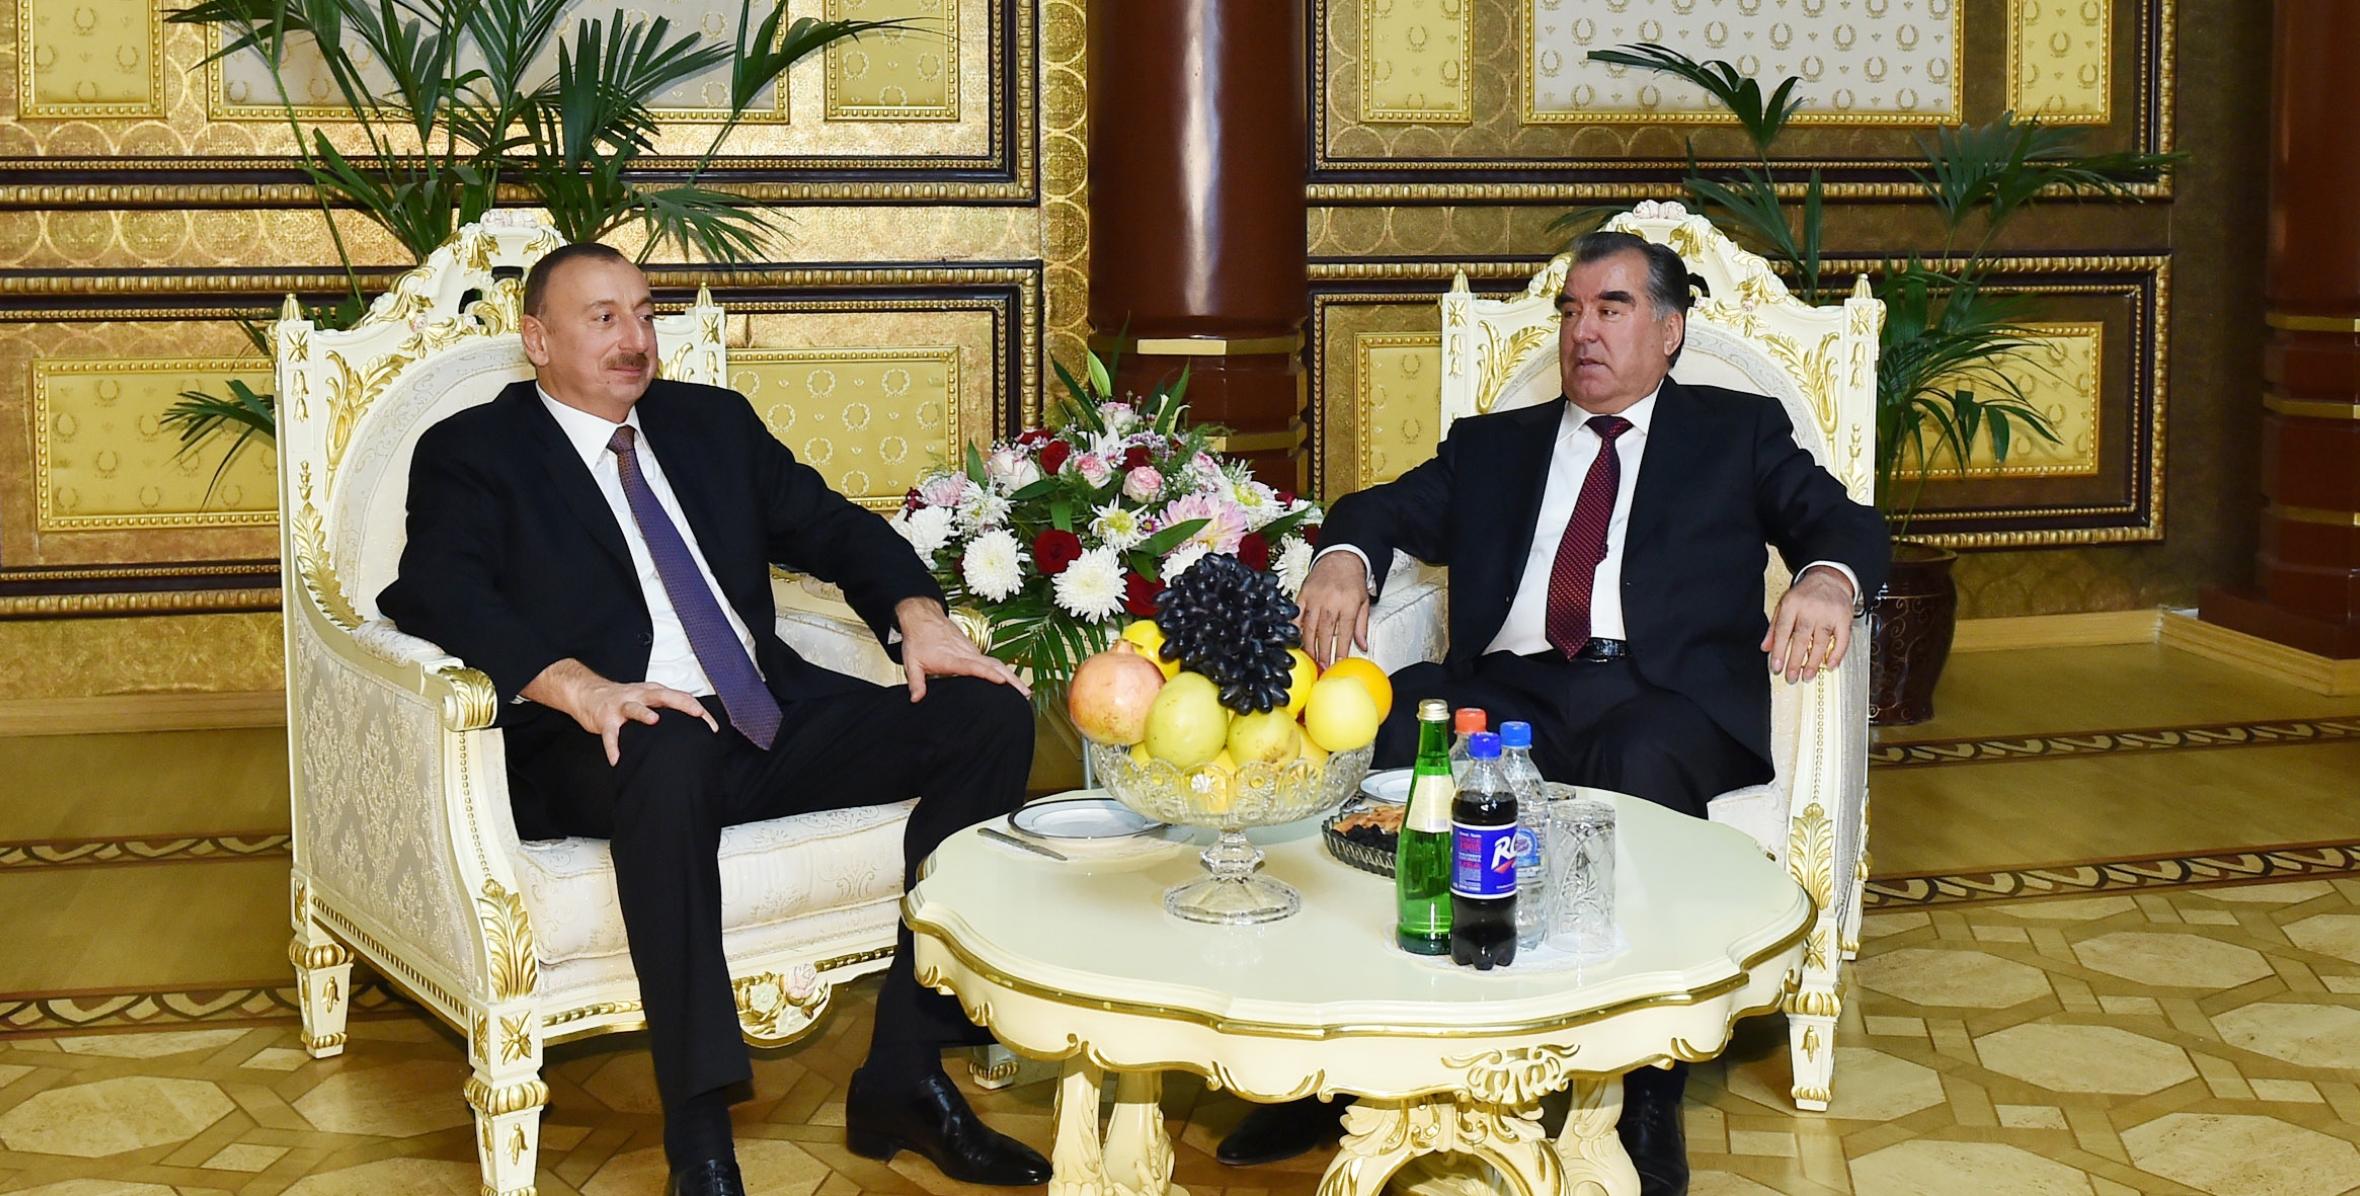 Завершился официальный визит Ильхама Алиева в Таджикистан